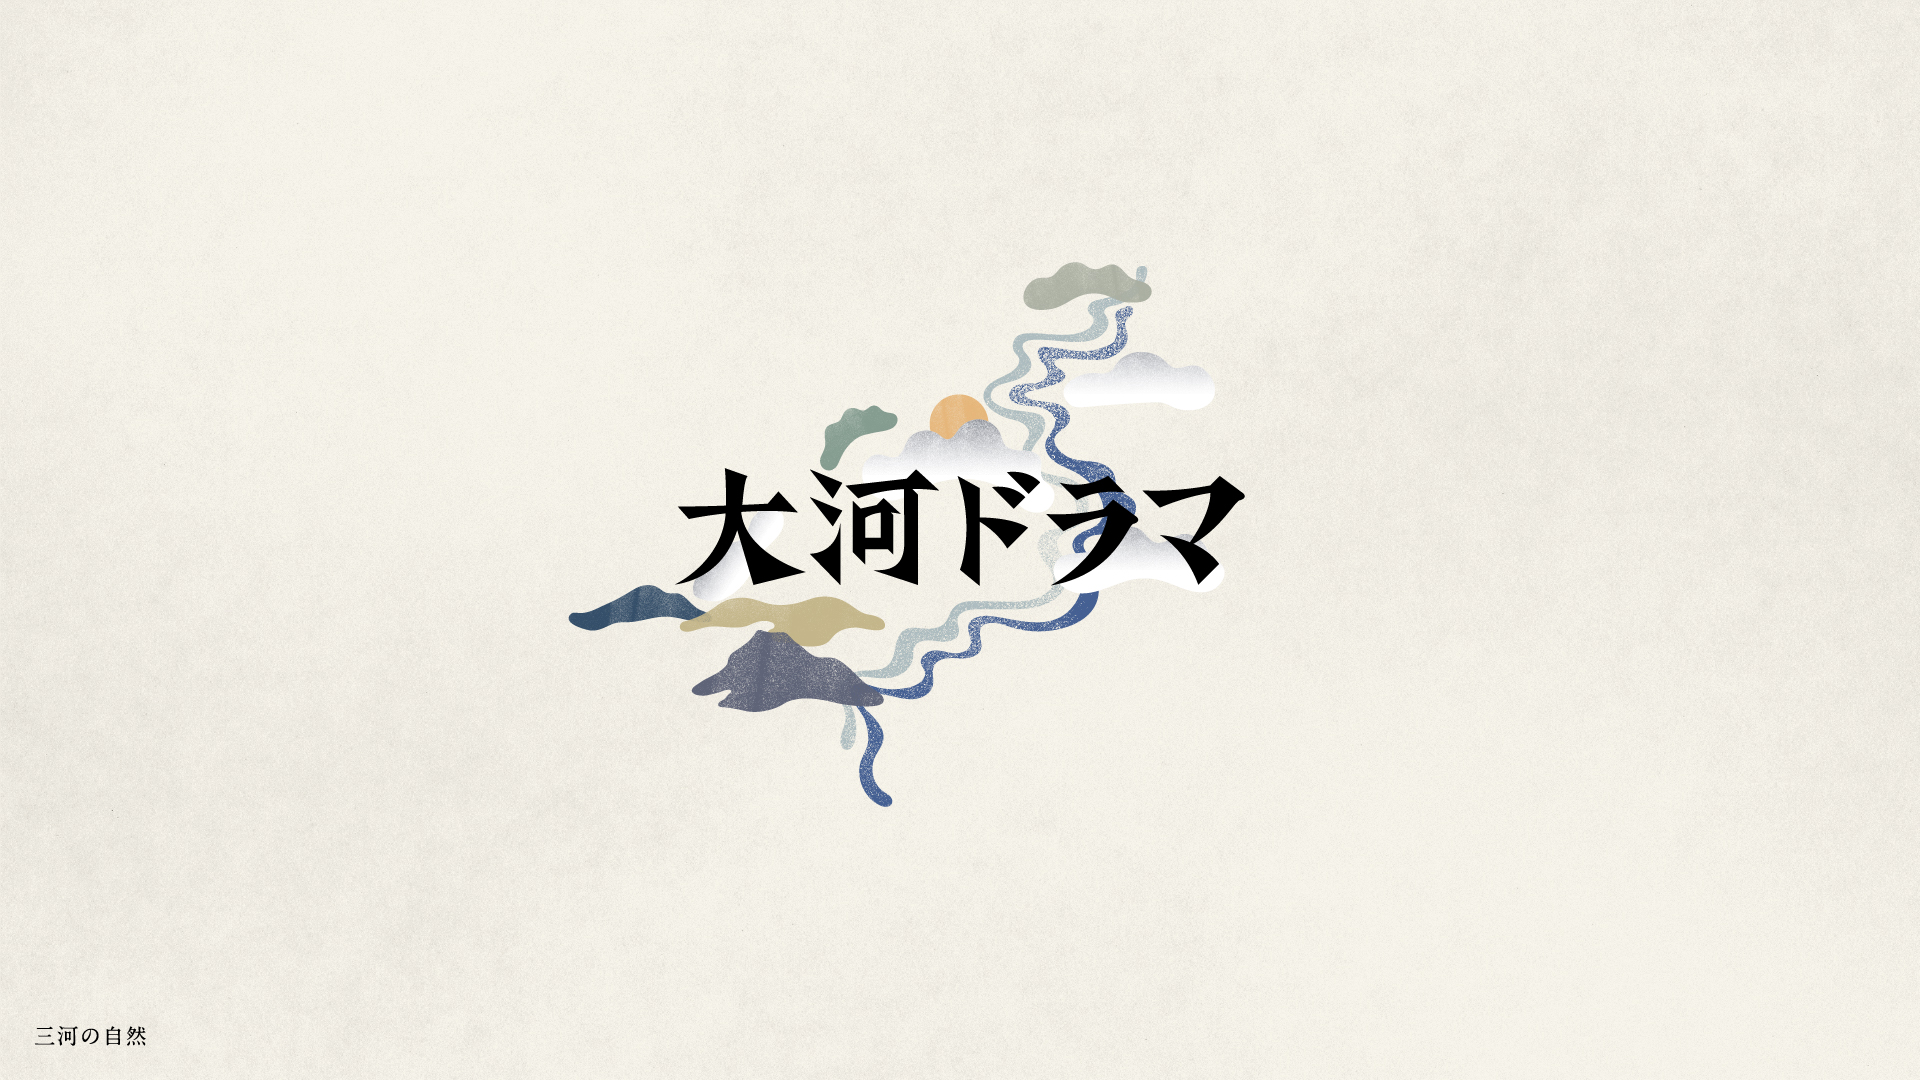  NHK大河ドラマ「どうする家康 」/ Opening Animation